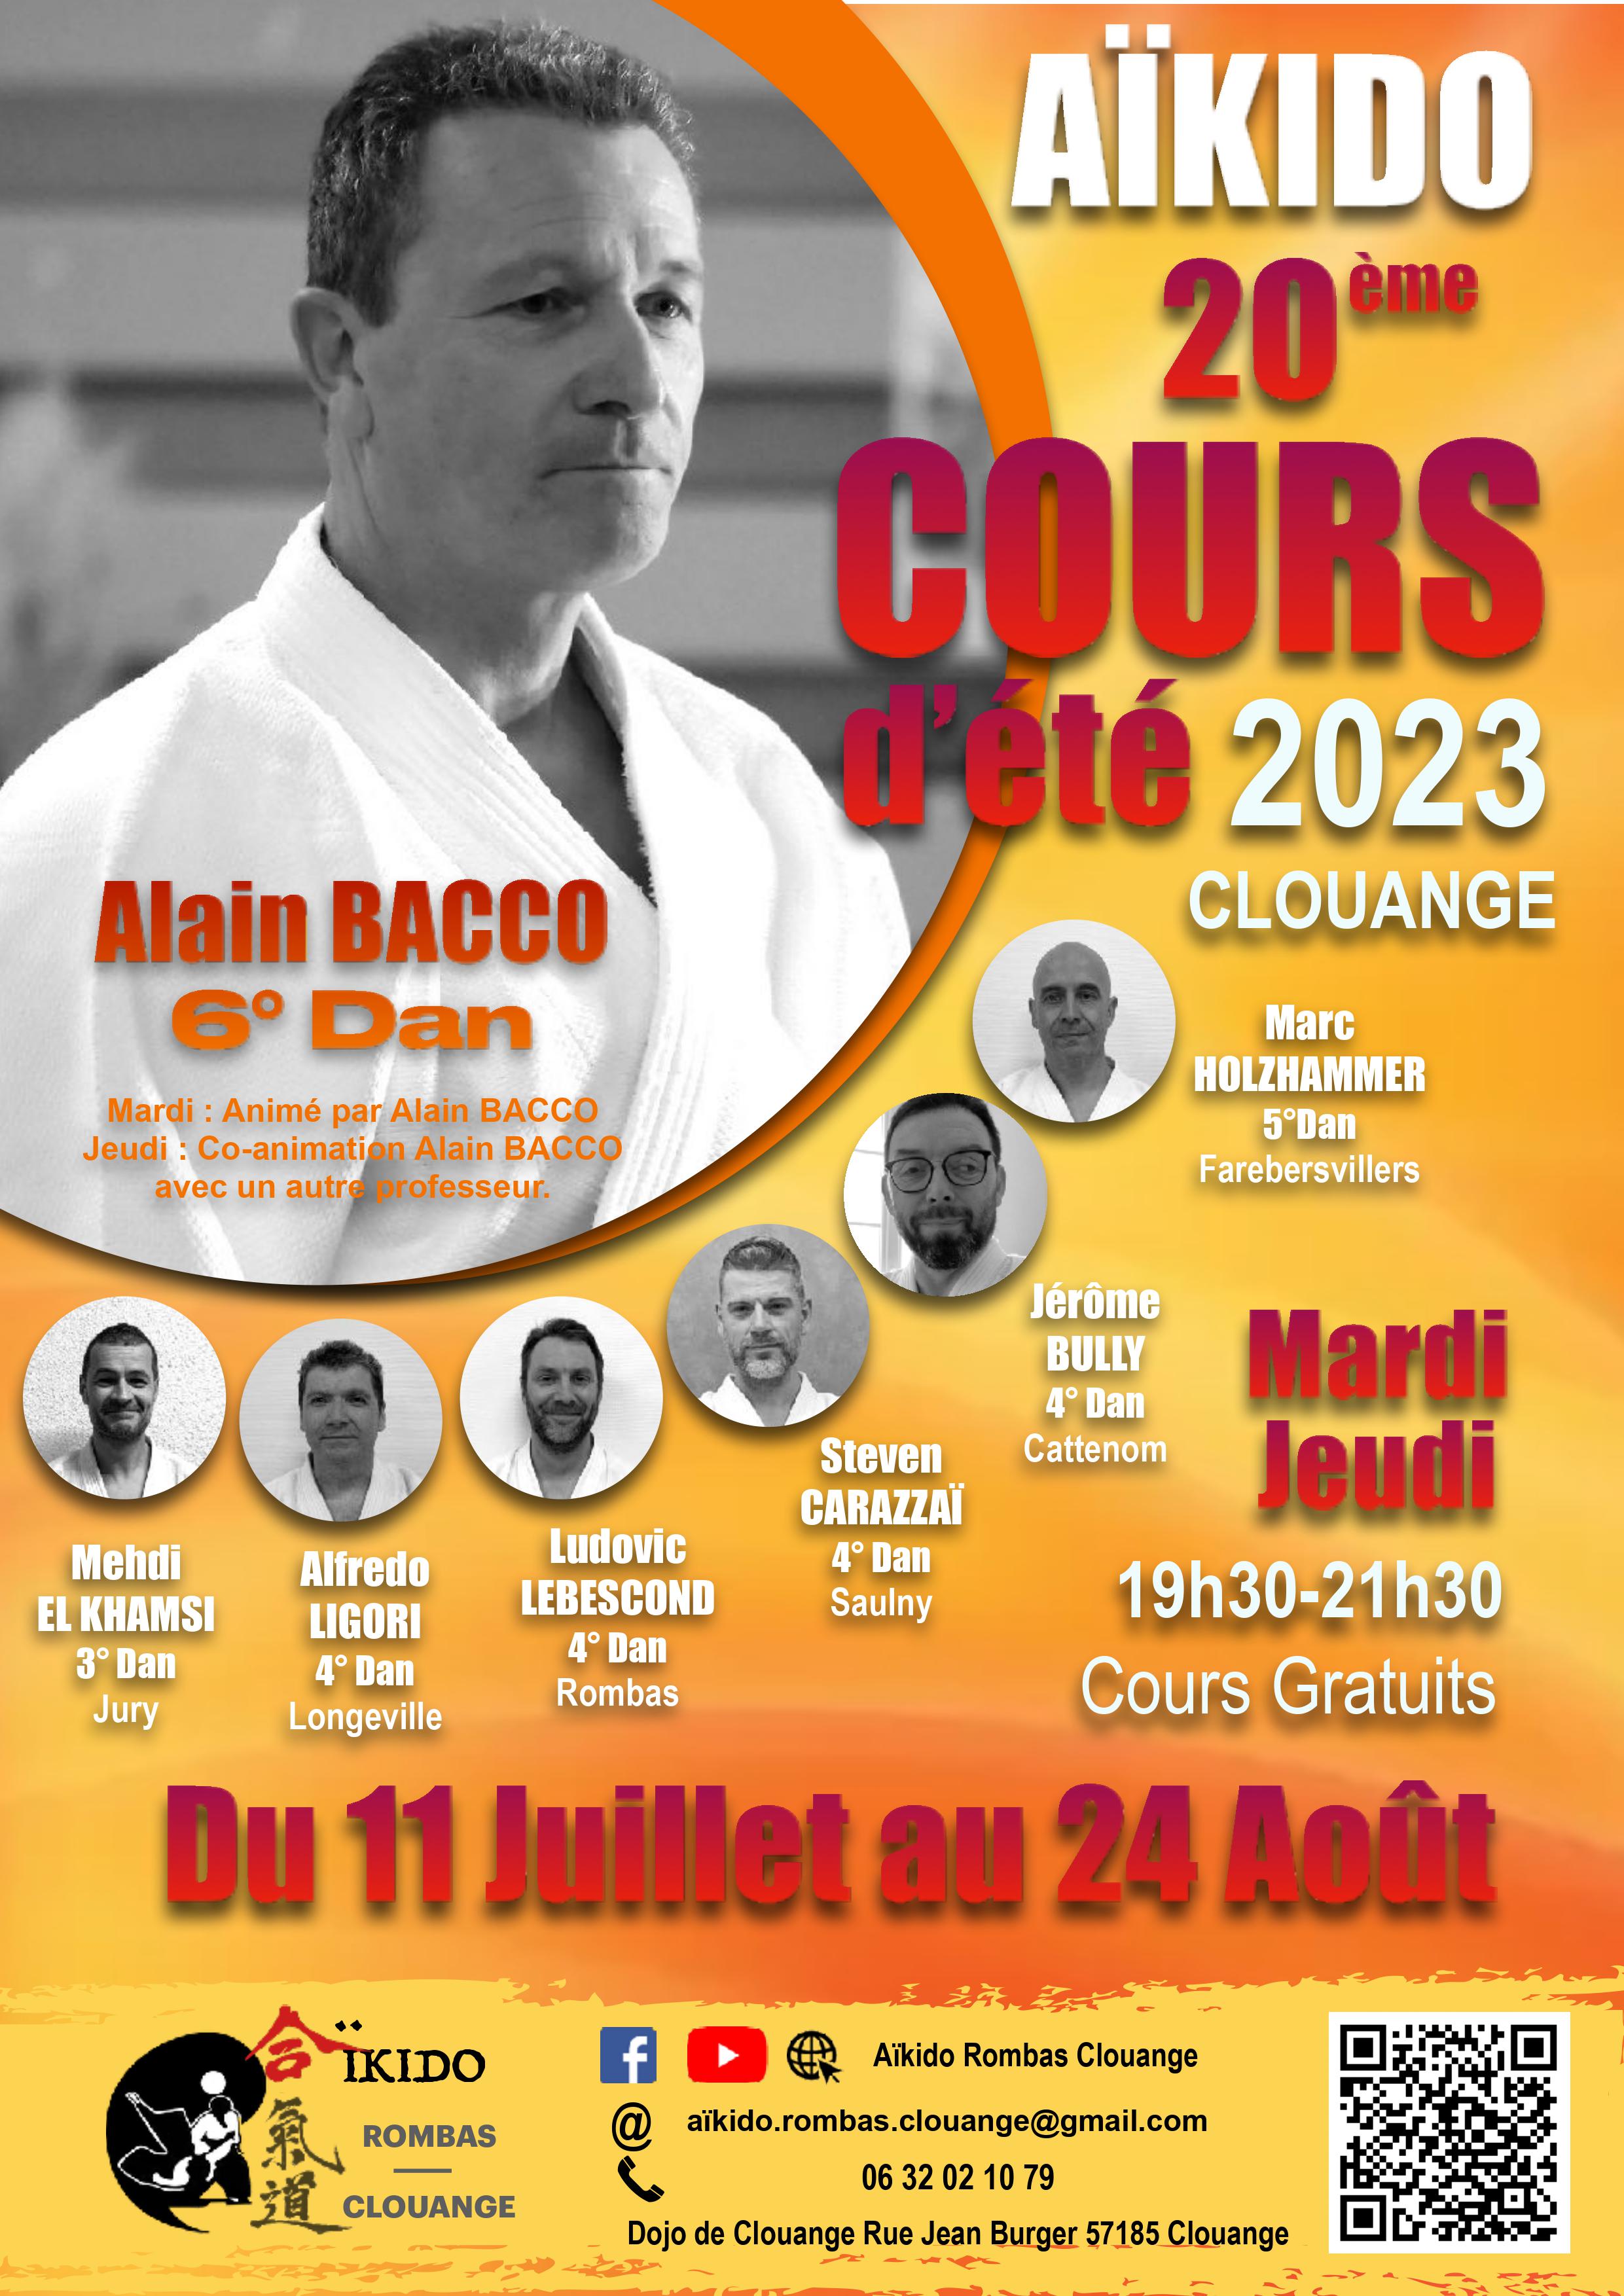 Affiche du Stage d'Aïkido à Vitry-sur-Orne animé par Alain Bacco le jeudi 24 août 2023